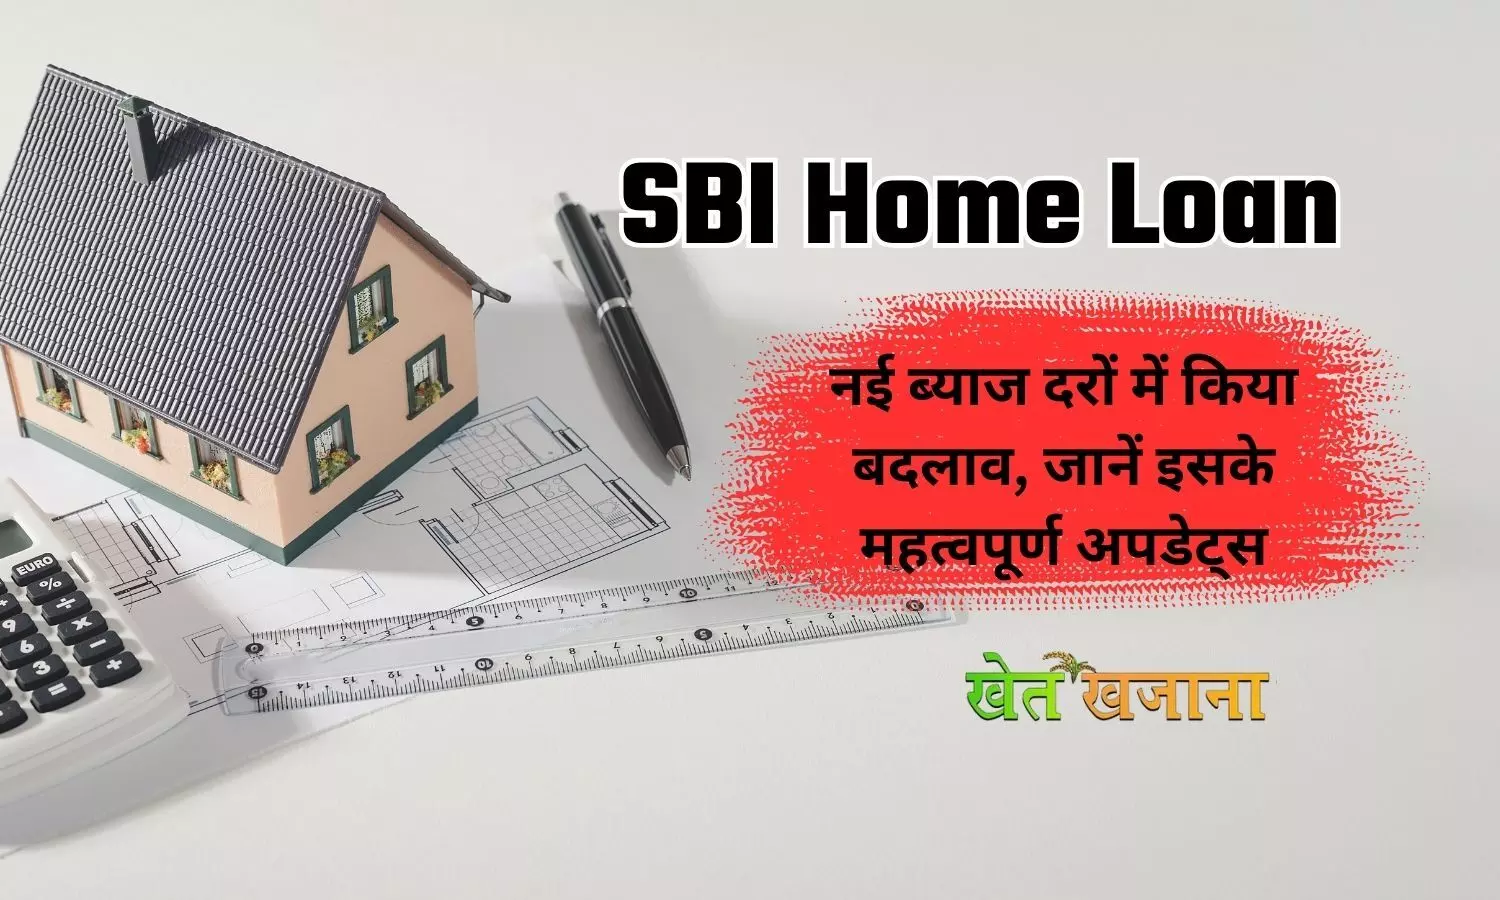 SBI Home Loan : नई ब्याज दरों में किया बदलाव, जानें इसके महत्वपूर्ण अपडेट्स